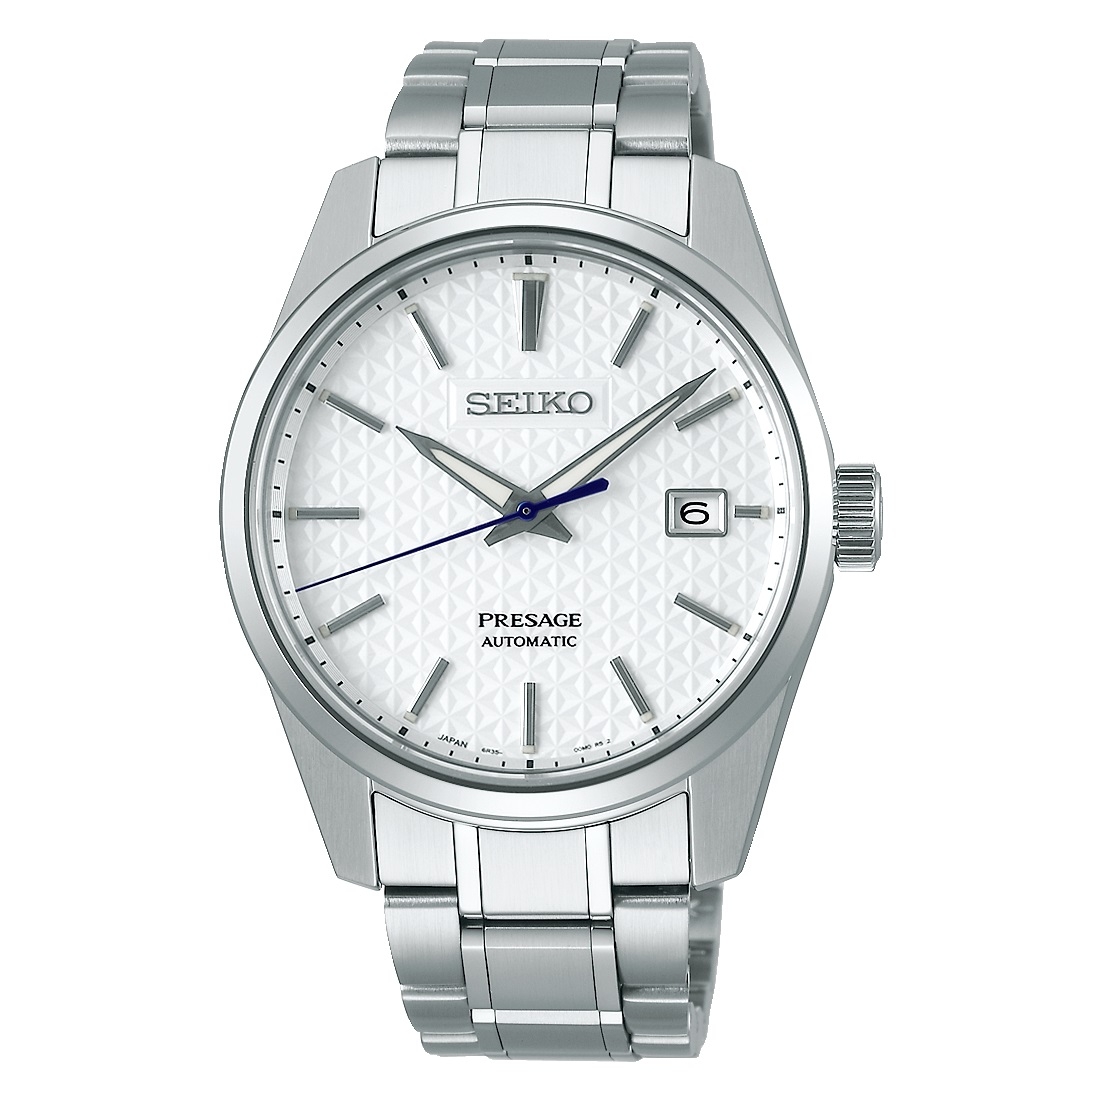 SEIKO - | - - - Uhren erste spezialisiert b2b Herstellung wwt